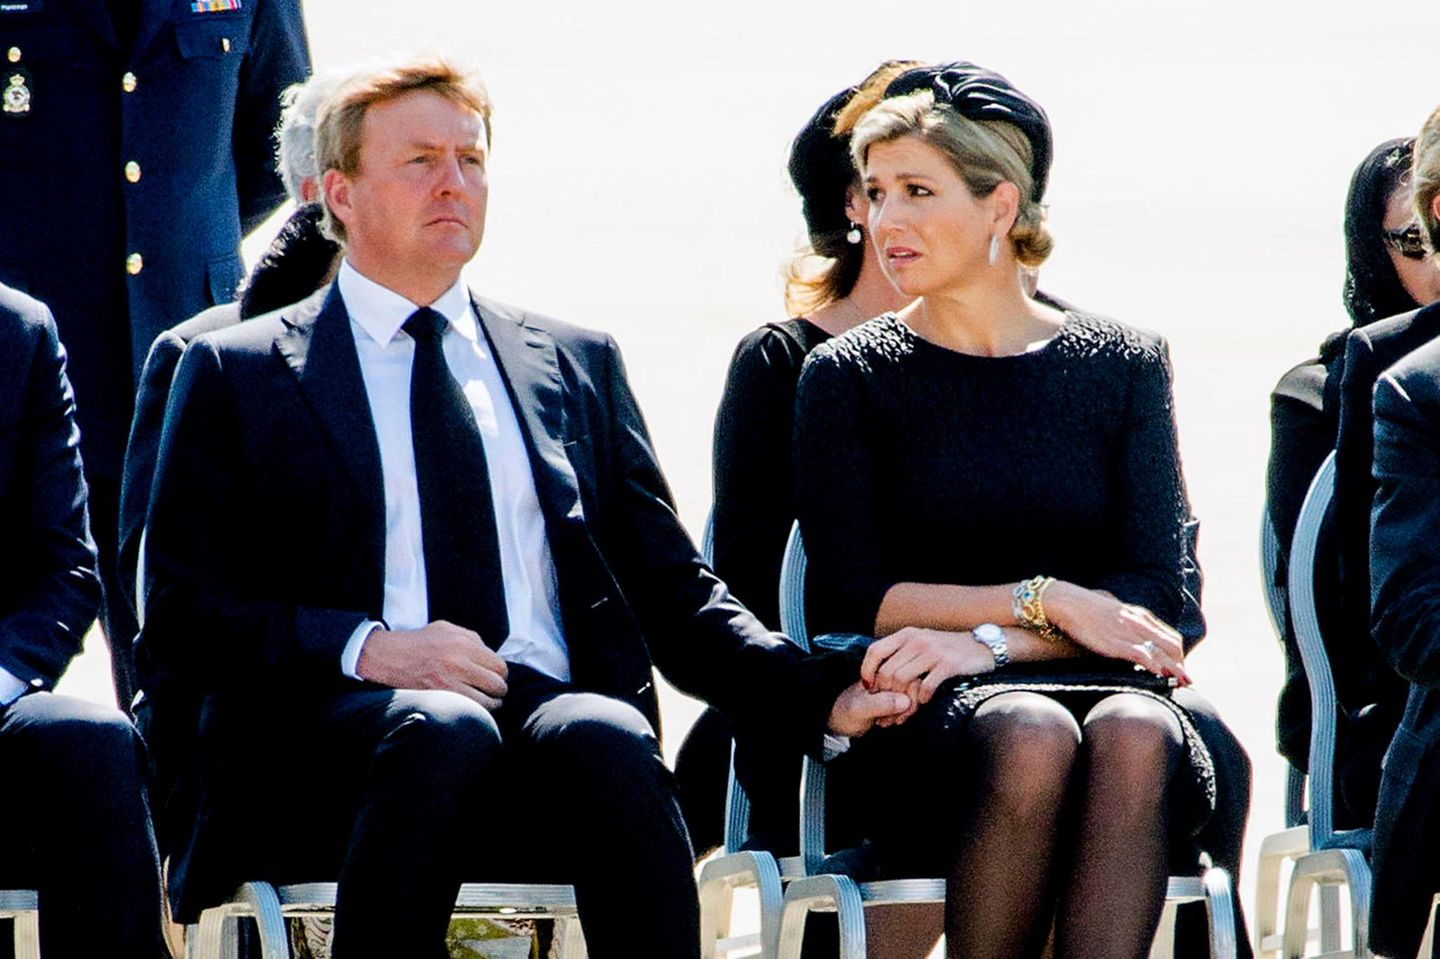 König Willem-Alexander und Königin Máxima empfangen die Toten in Eindhoven. Sie versuchen, sich gegenseitig Kraft zu geben.